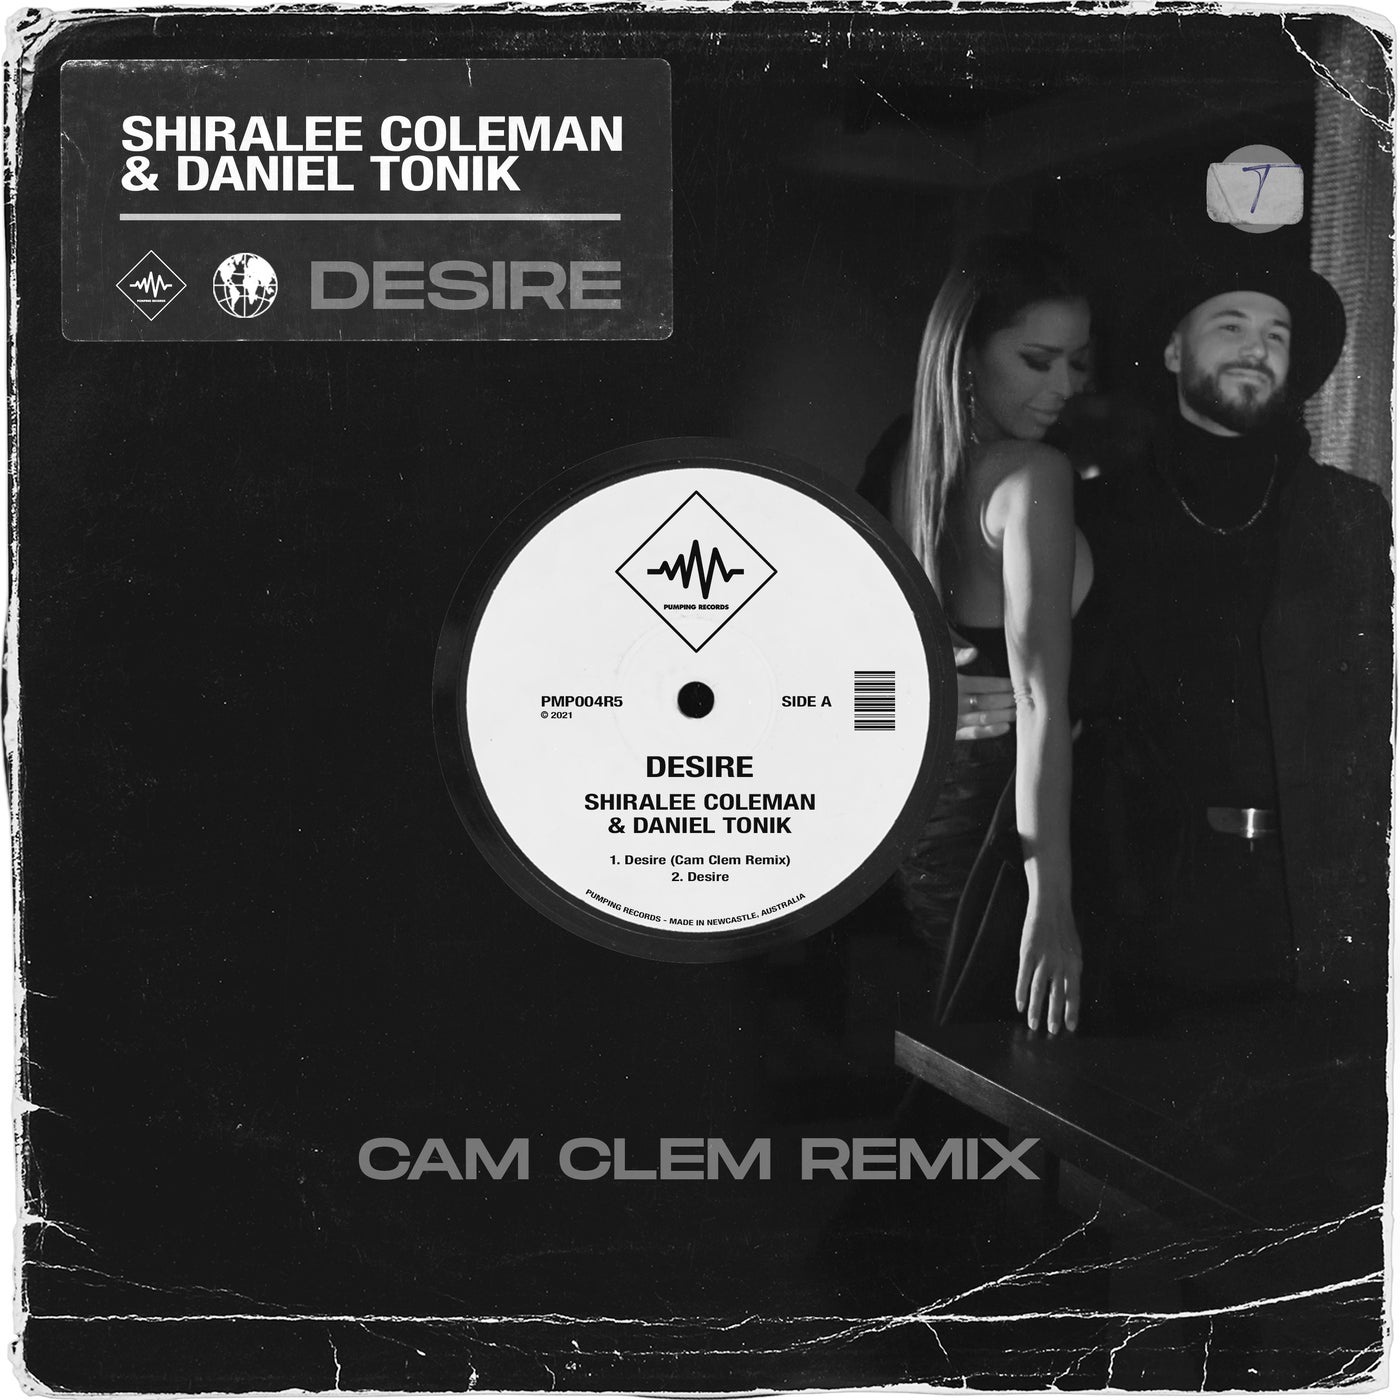 Daniel Tonik, Shiralee Coleman - Desire (Cam Clem Remix) [PMP004R5]